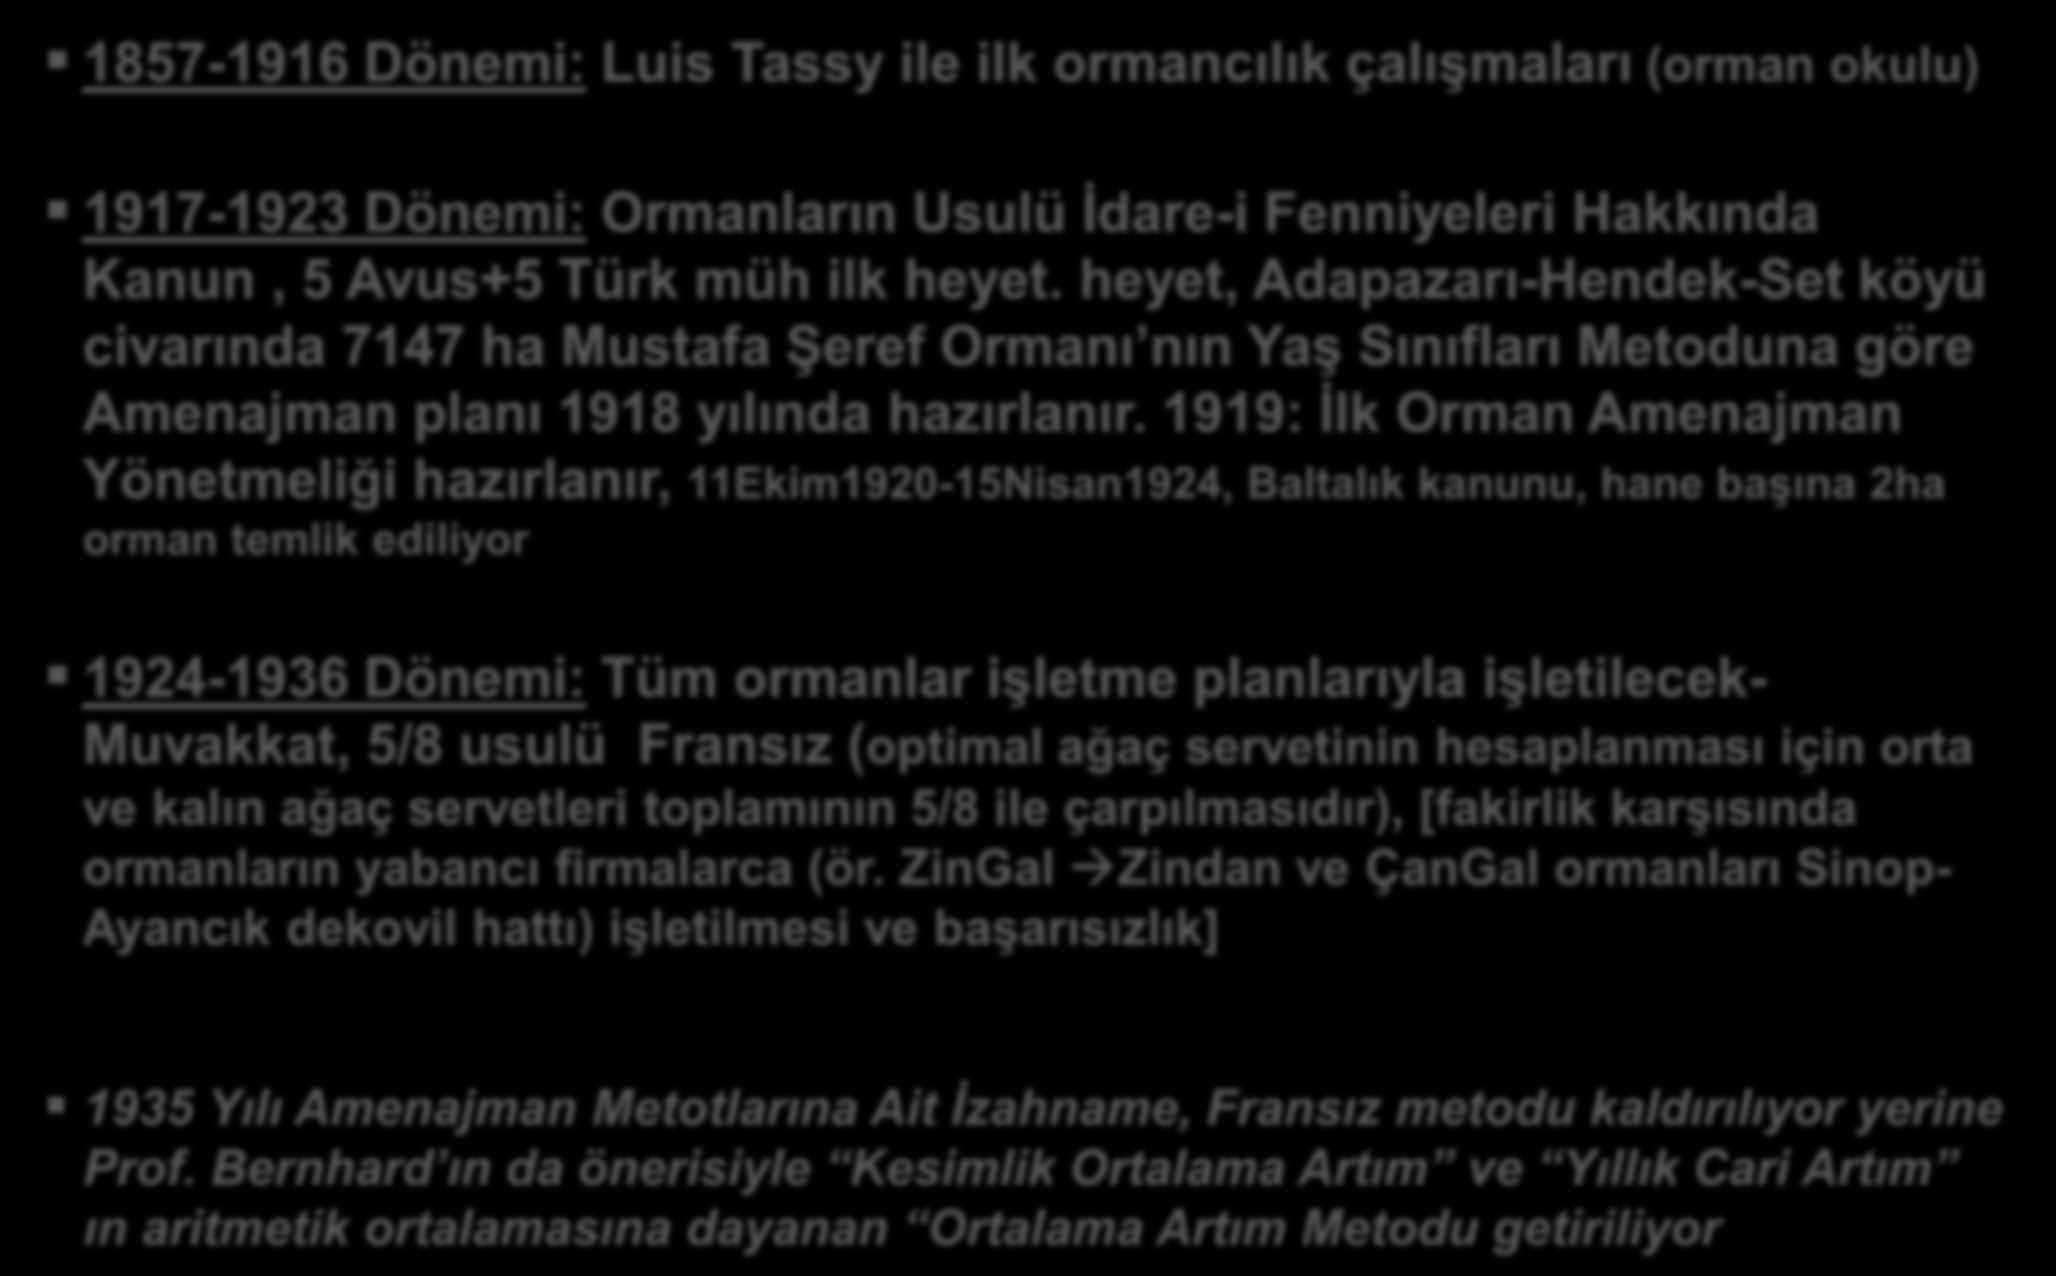 Amenajmanın Tarihçesi -I 1857-1916 Dönemi: Luis Tassy ile ilk ormancılık çalışmaları (orman okulu) 1917-1923 Dönemi: Ormanların Usulü İdare-i Fenniyeleri Hakkında Kanun, 5 Avus+5 Türk müh ilk heyet.